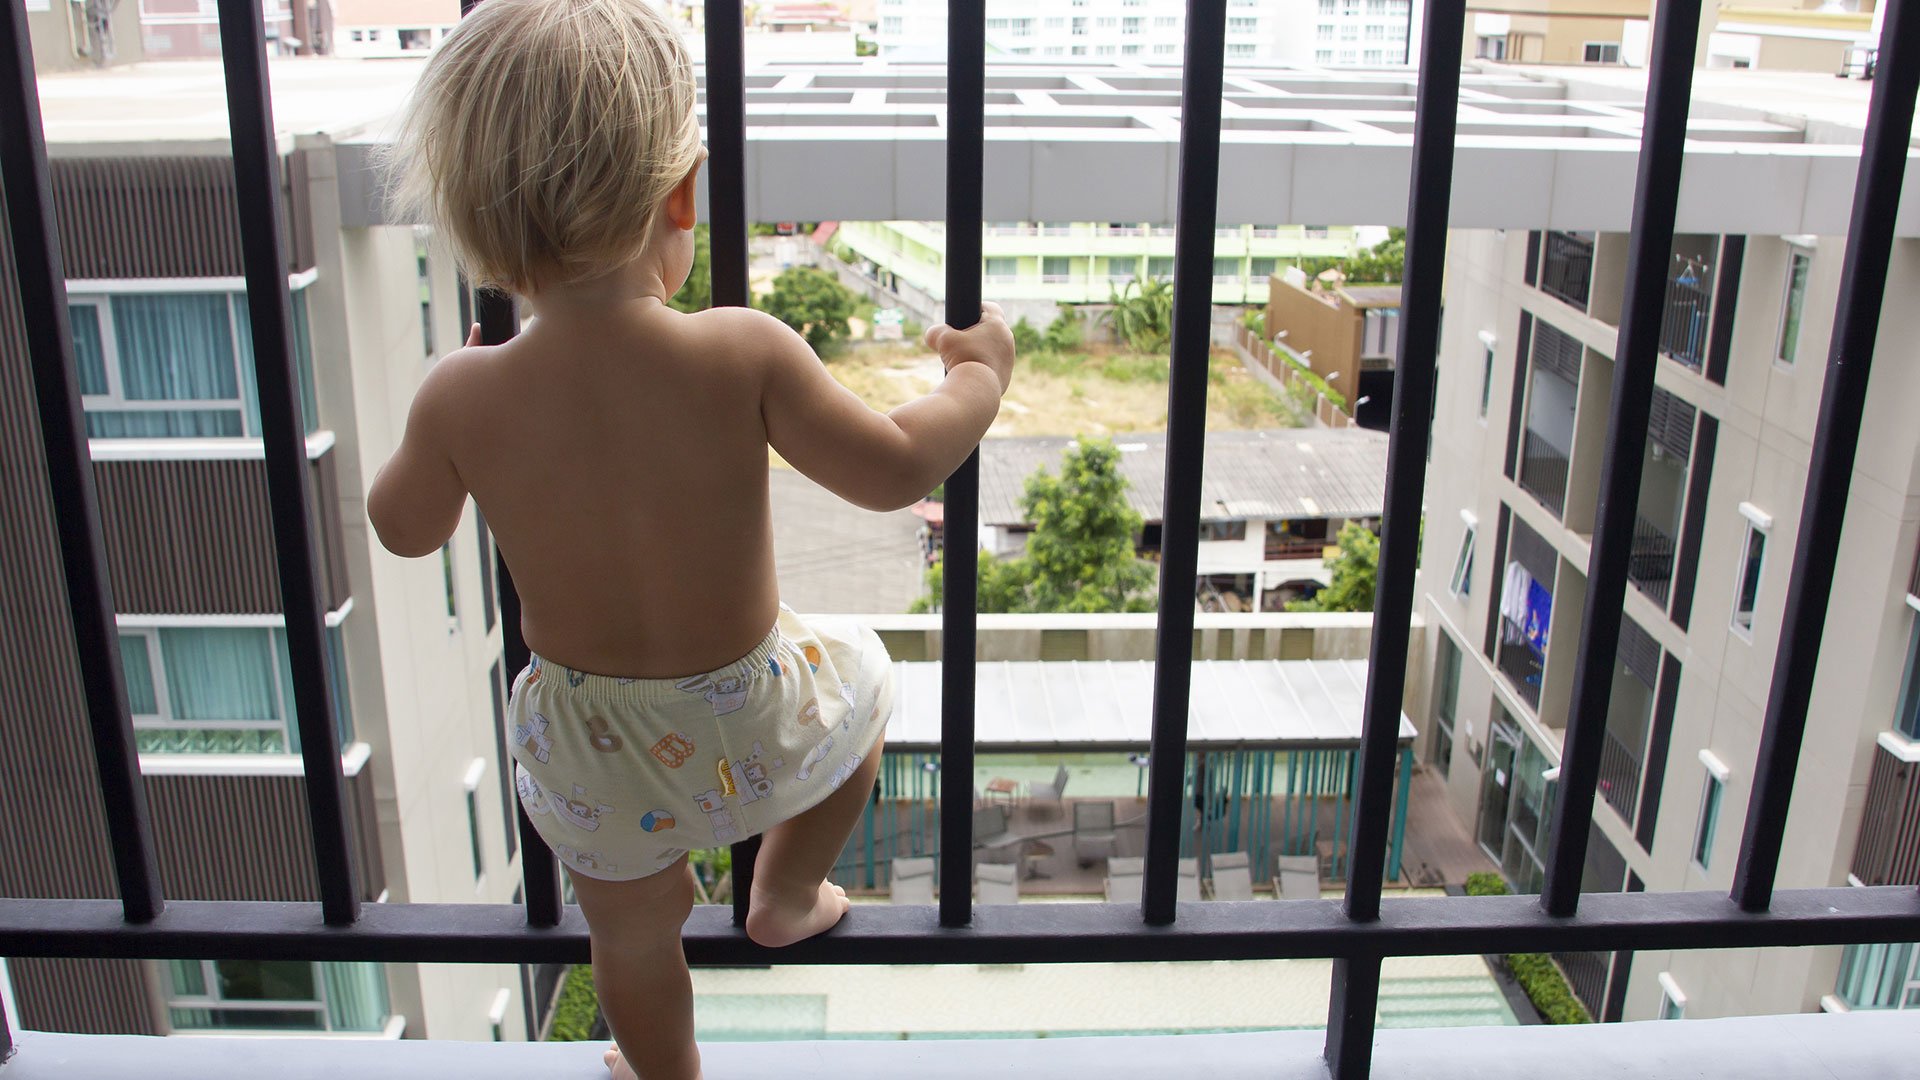 Balkon kindersicher machen: So funktioniert's!